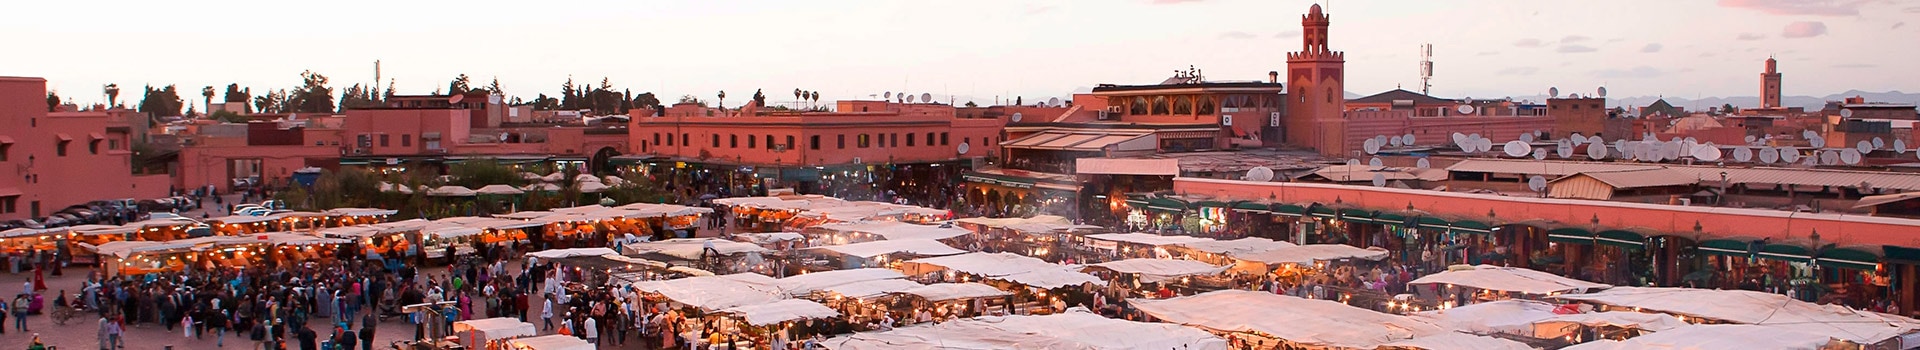 Valencia - Marrakech